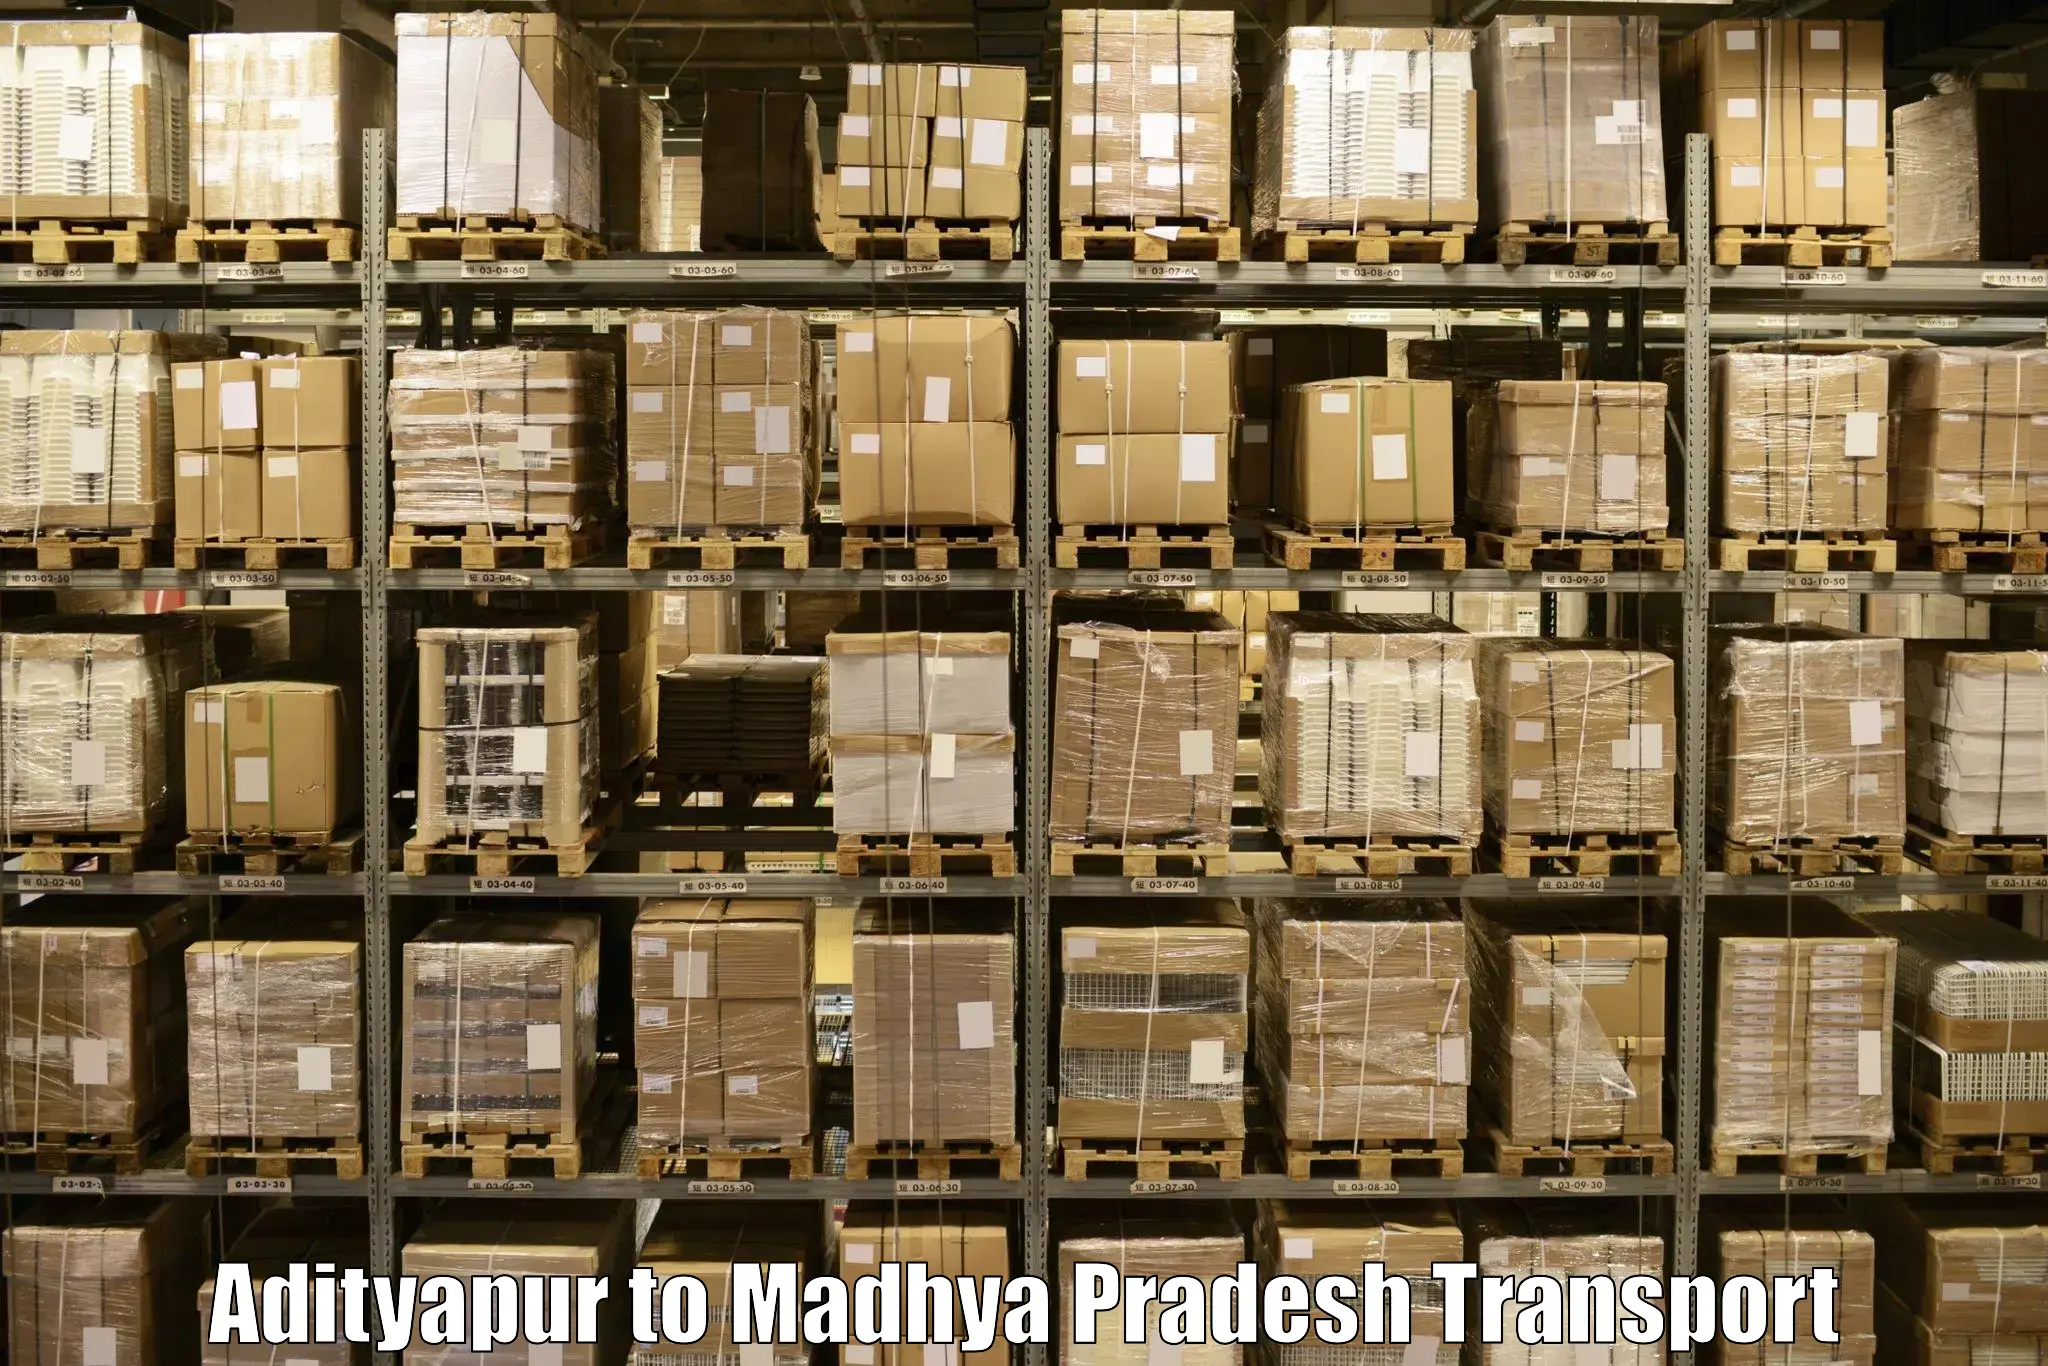 Truck transport companies in India Adityapur to Shahgarh